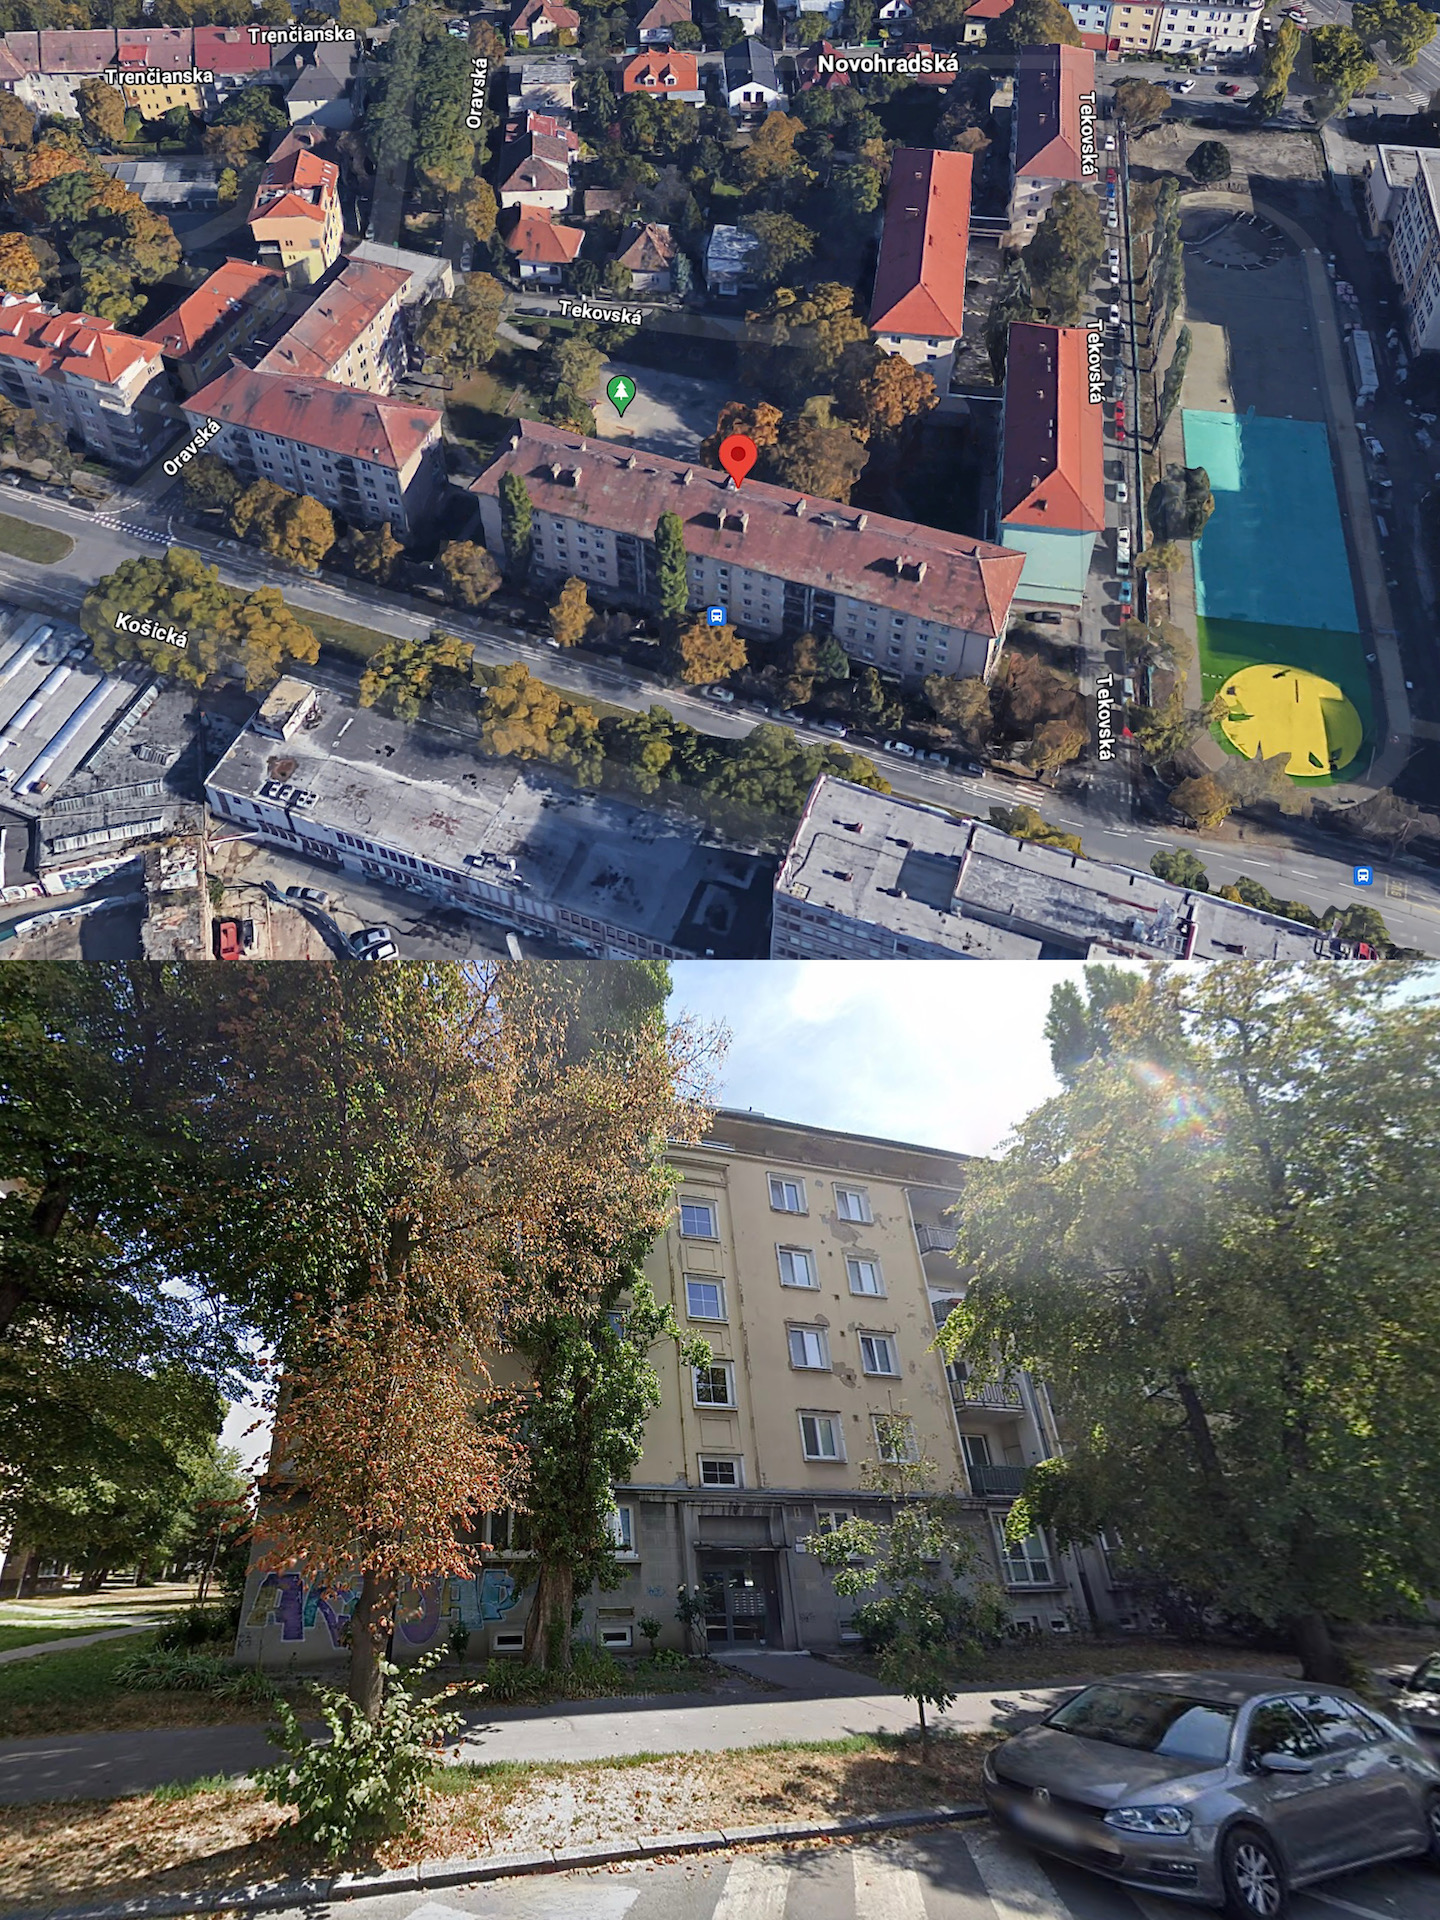 Letecký pohľad na bytový dom Košická 10, 12, 14 (hore) a bližší pohľad na stav fasády bytového domu (dole)